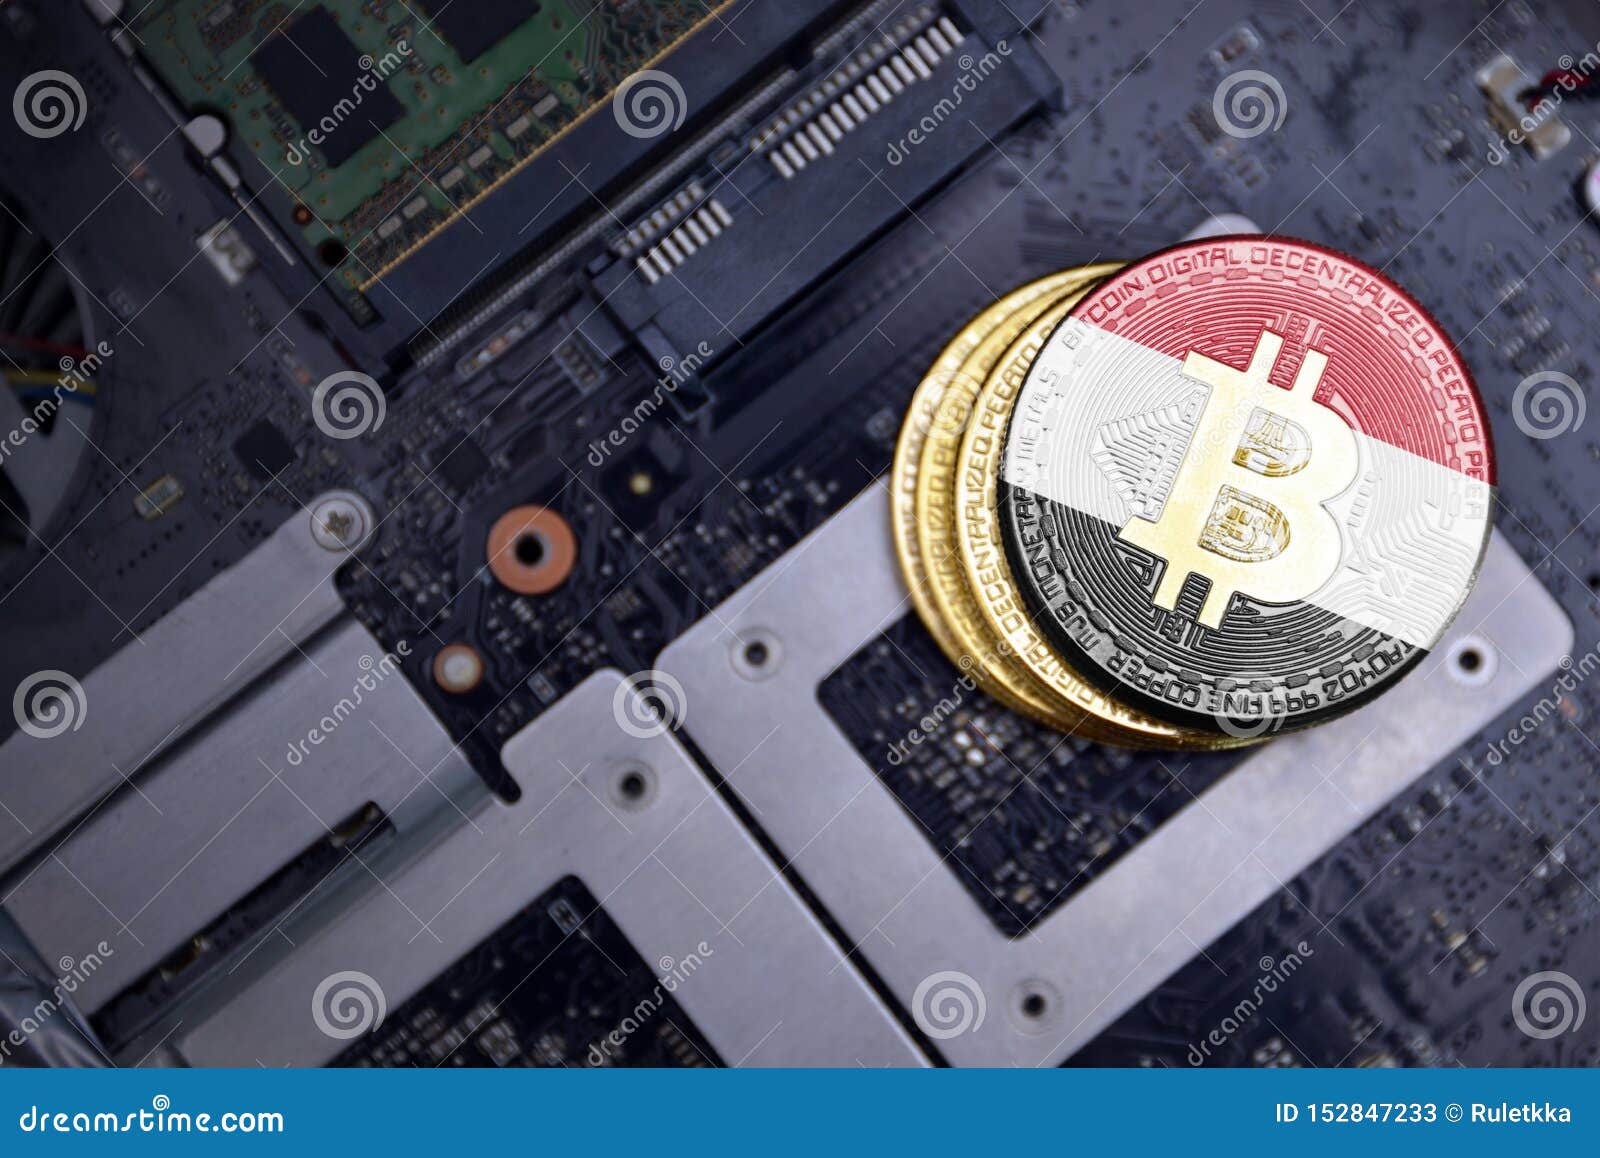 btc electronics egipt bitcoin nu este un risc sistemic